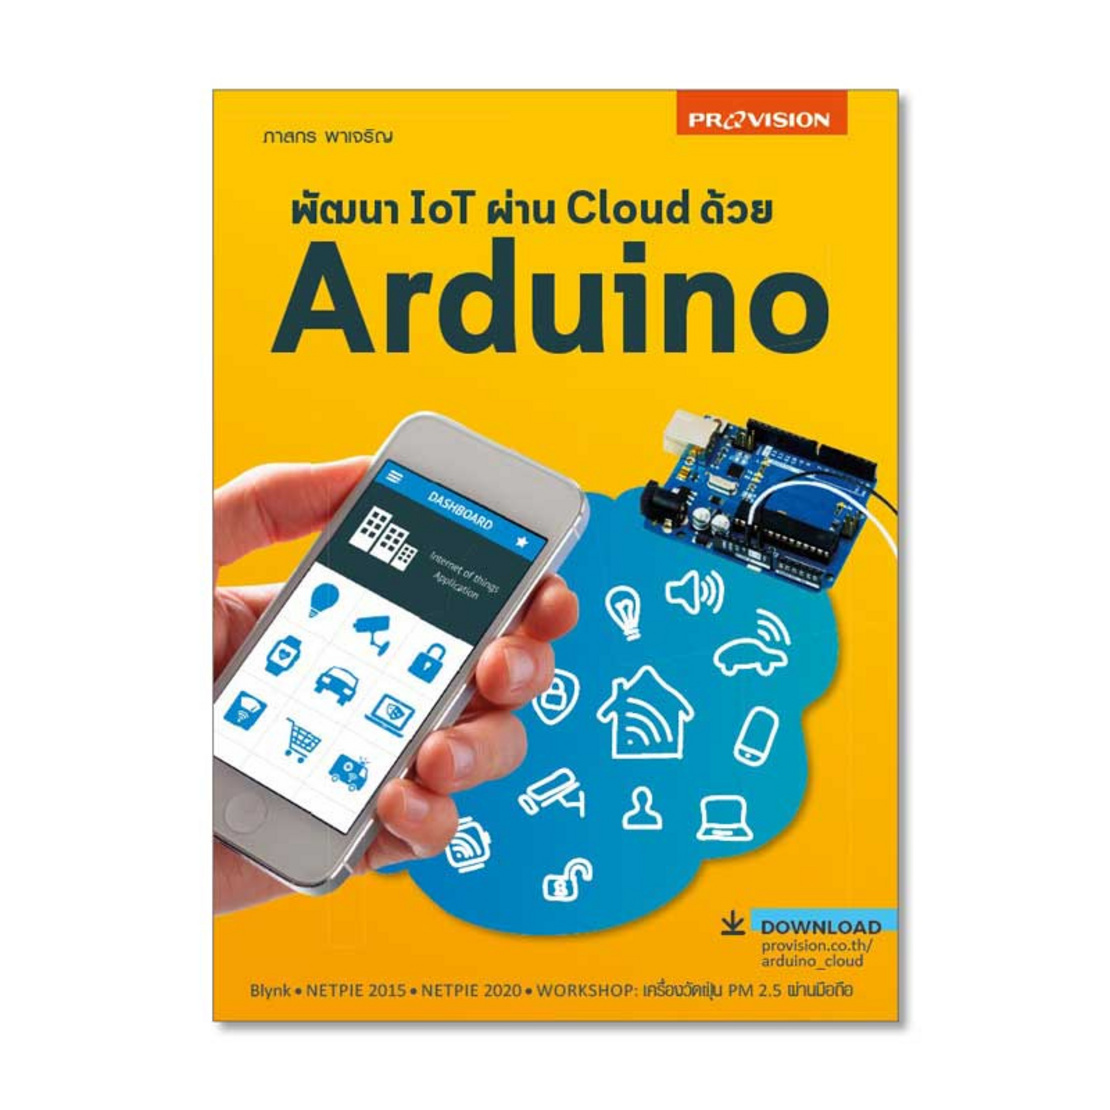 หนังสือ พัฒนา Iot ผ่าน Cloud ด้วย Arduino | Allonline